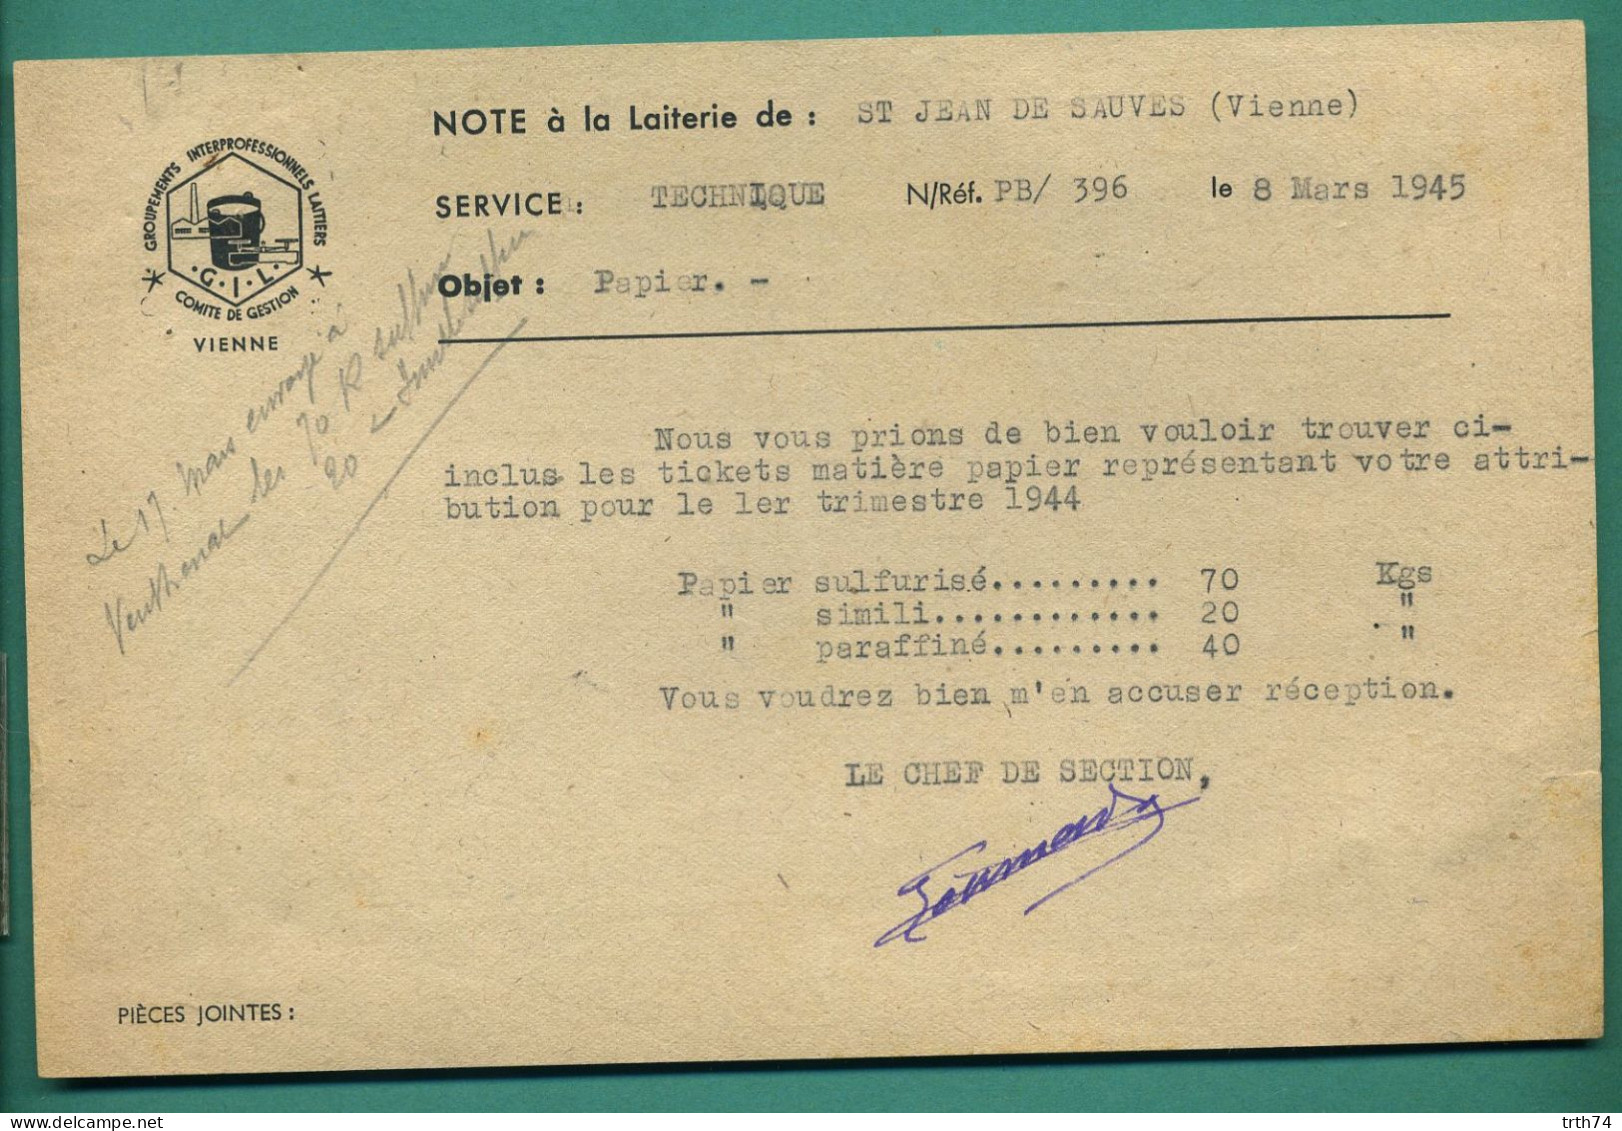 86 Saint Jean De Sauves Groupements Interprofessionnels Laitiers Note à La Laiterie 8 Mars 1945 - Food